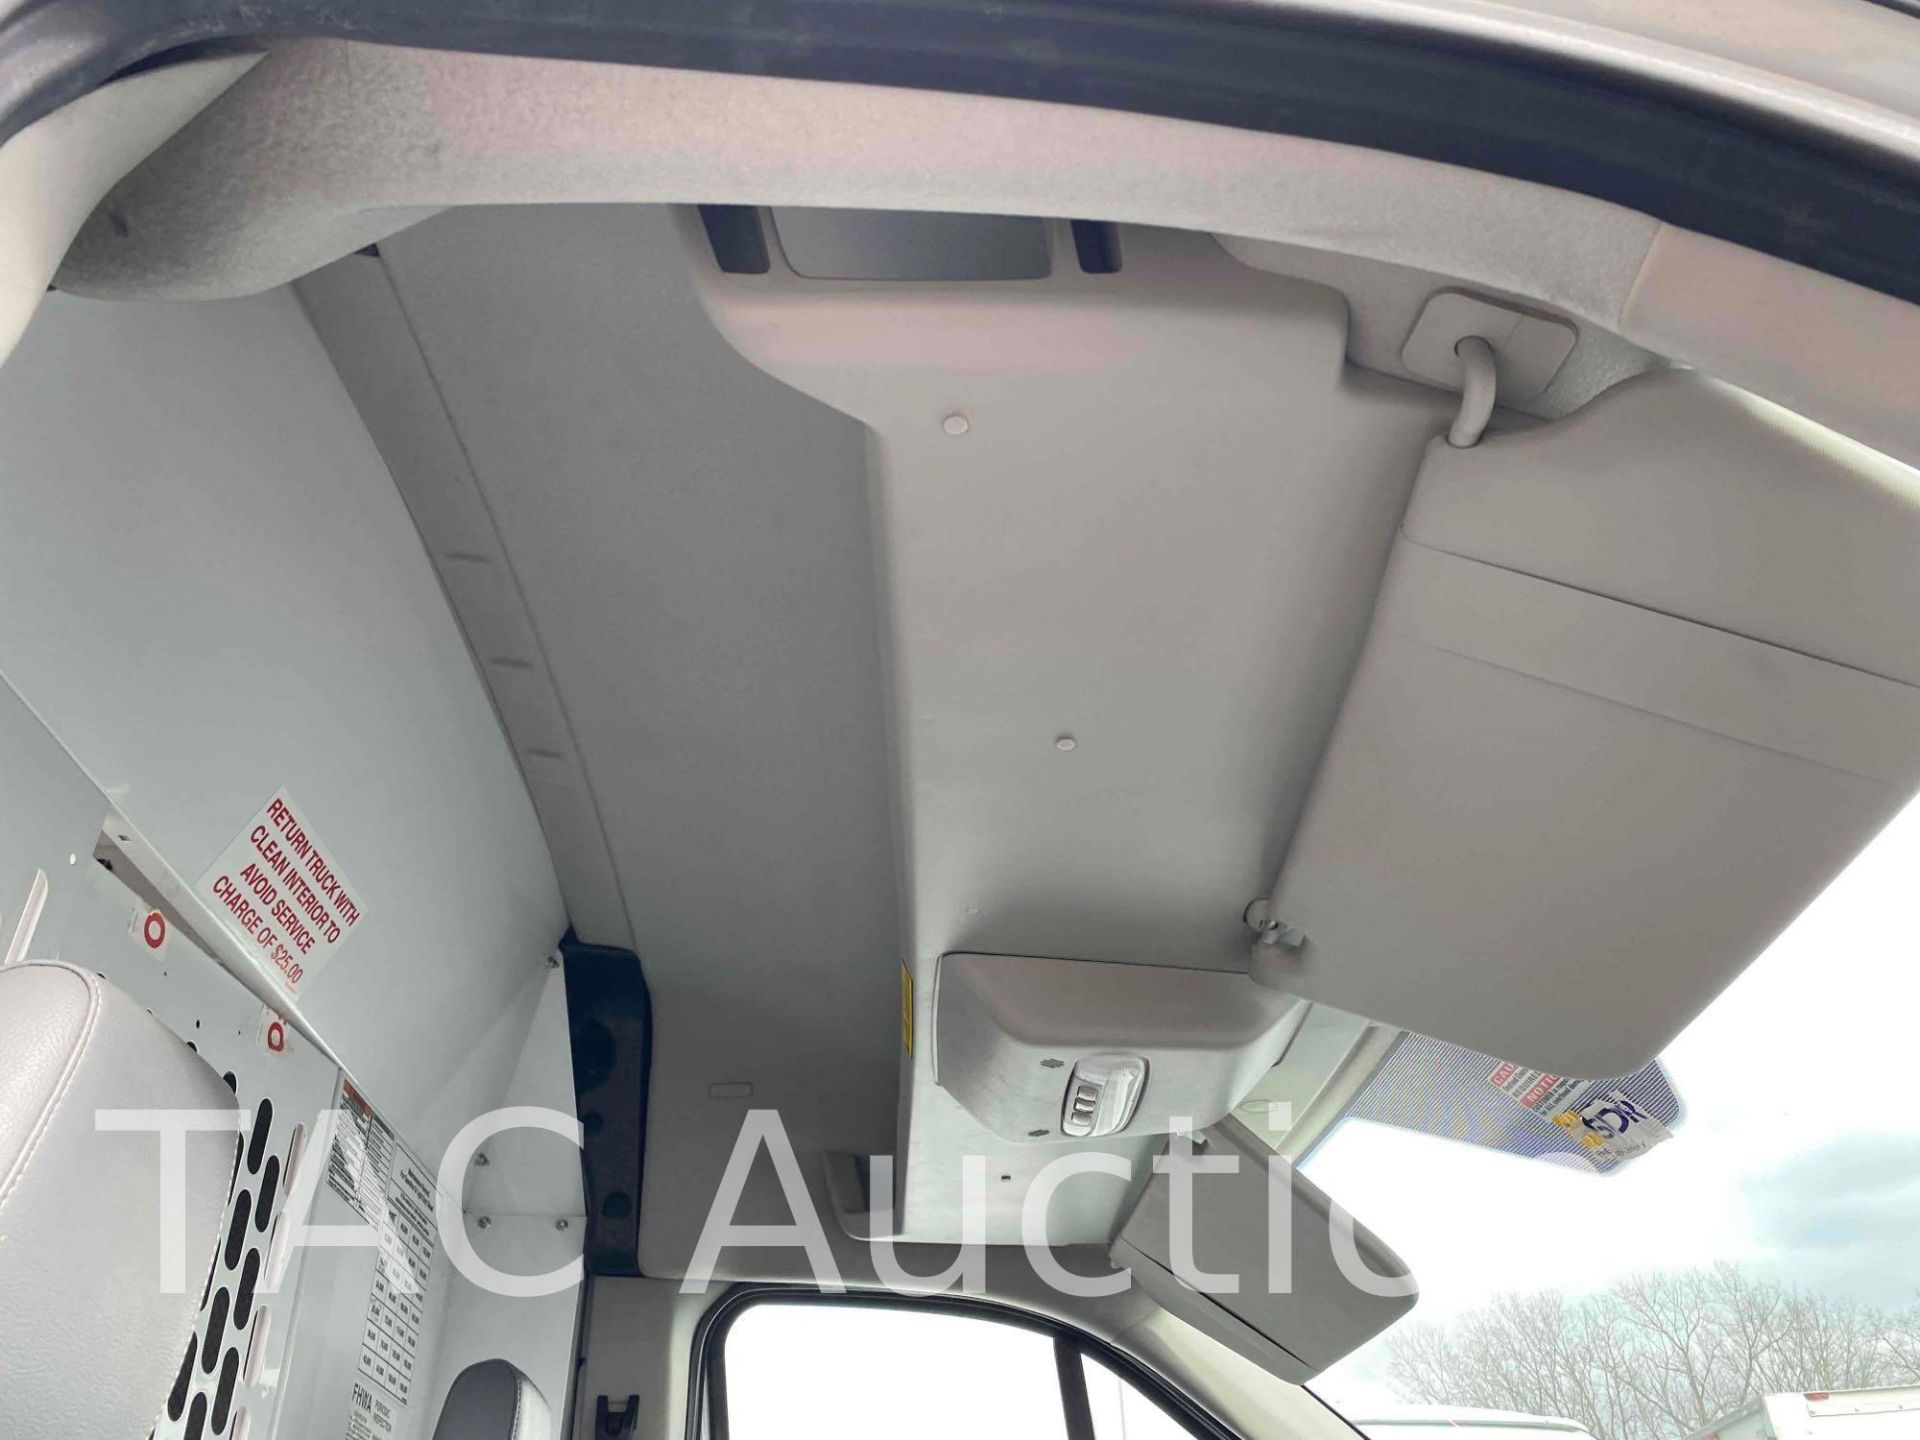 2019 Ford Transit 150 Cargo Van - Image 19 of 42